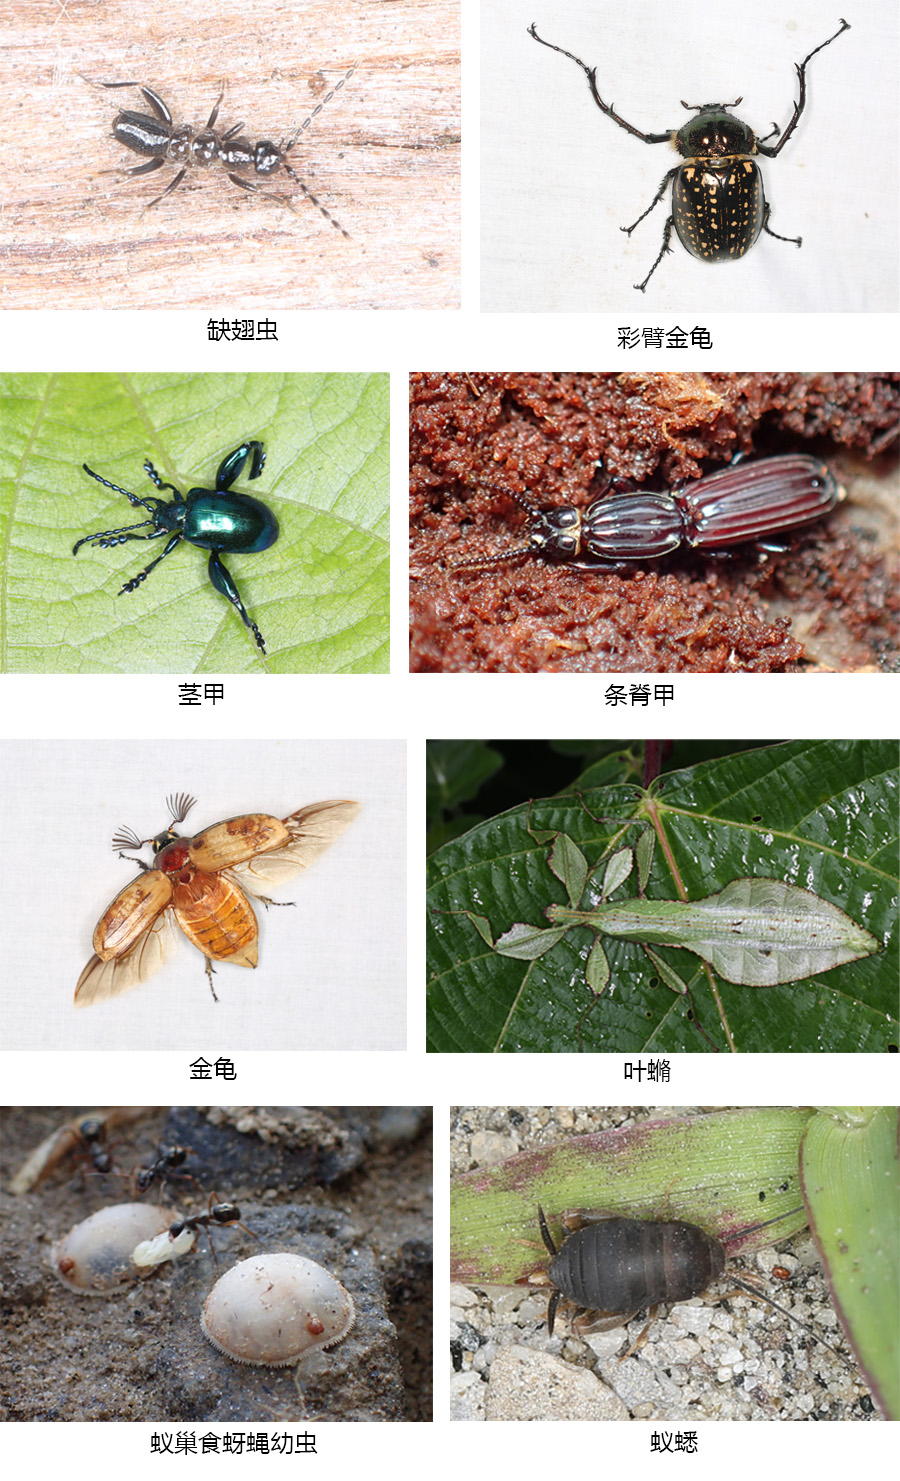 拍摄的昆虫生态照片